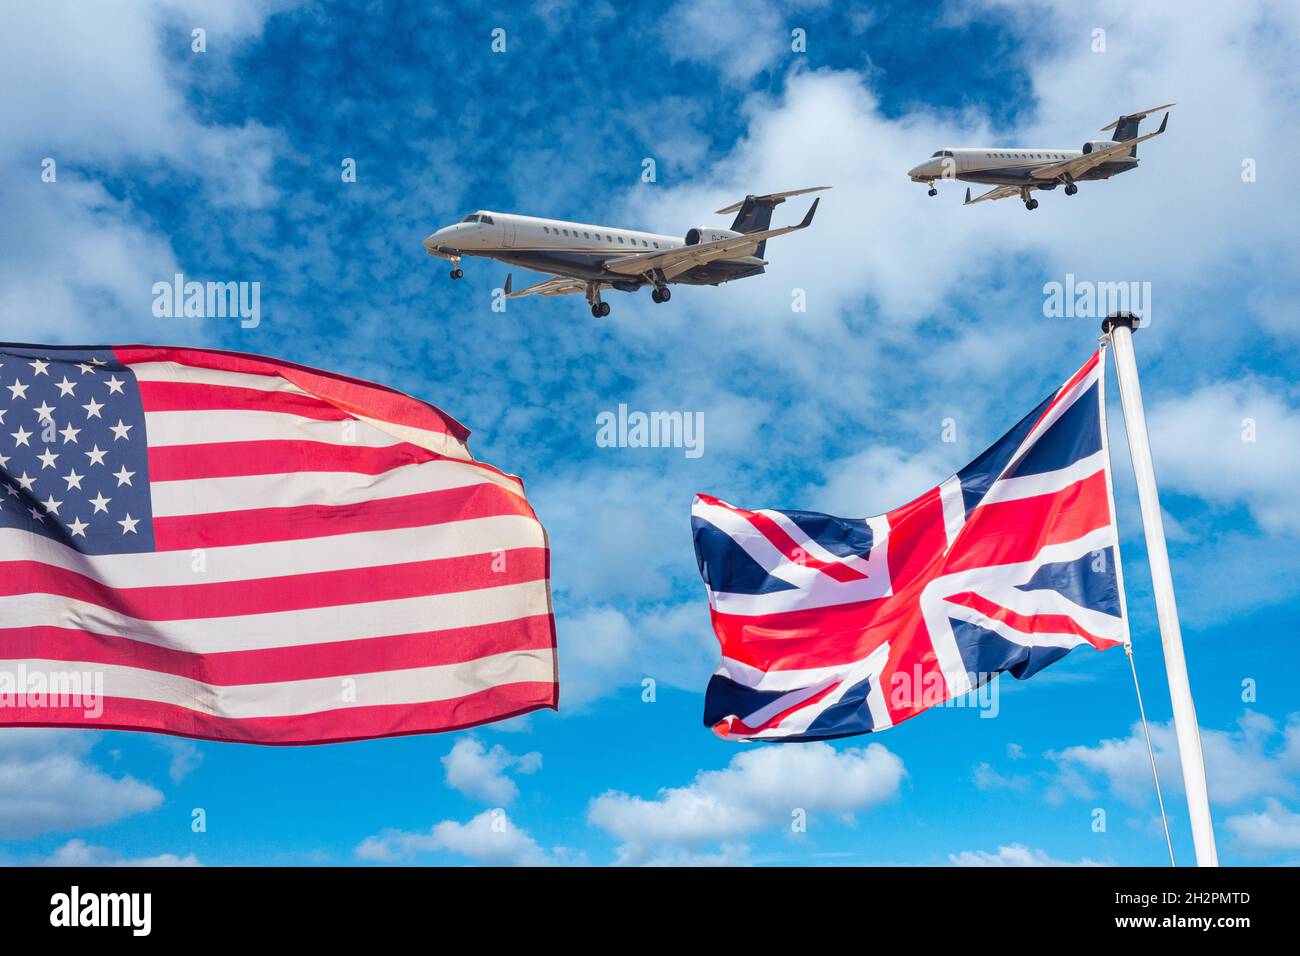 Flaggen der USA und Großbritanniens mit Privatjets vor blauem Himmel. Luftfahrtindustrie, globale Erwärmung, Handelsabkommen, Luftverschmutzung, Flugverbot für Covid... Konzept. Stockfoto